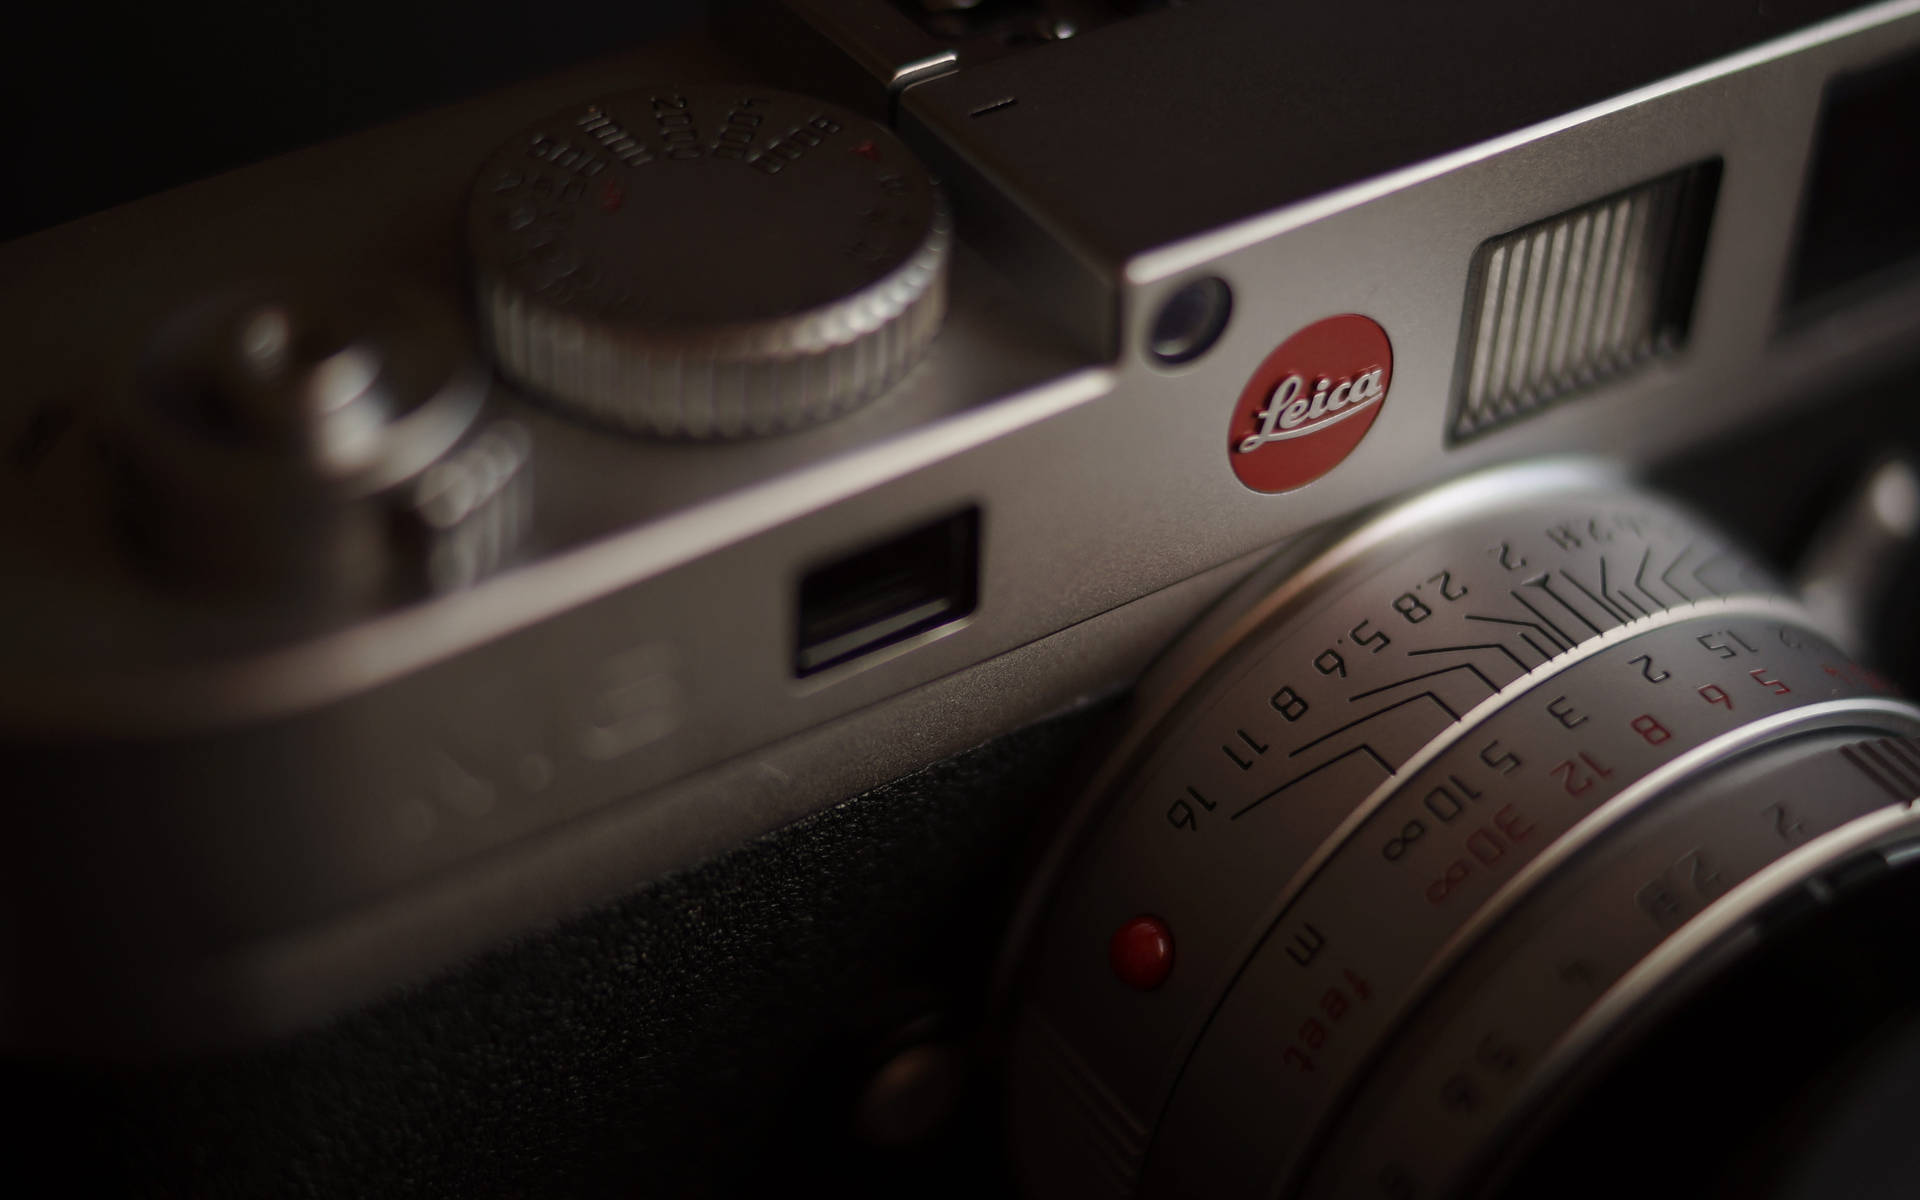 Leica Dslr Camera Close-up